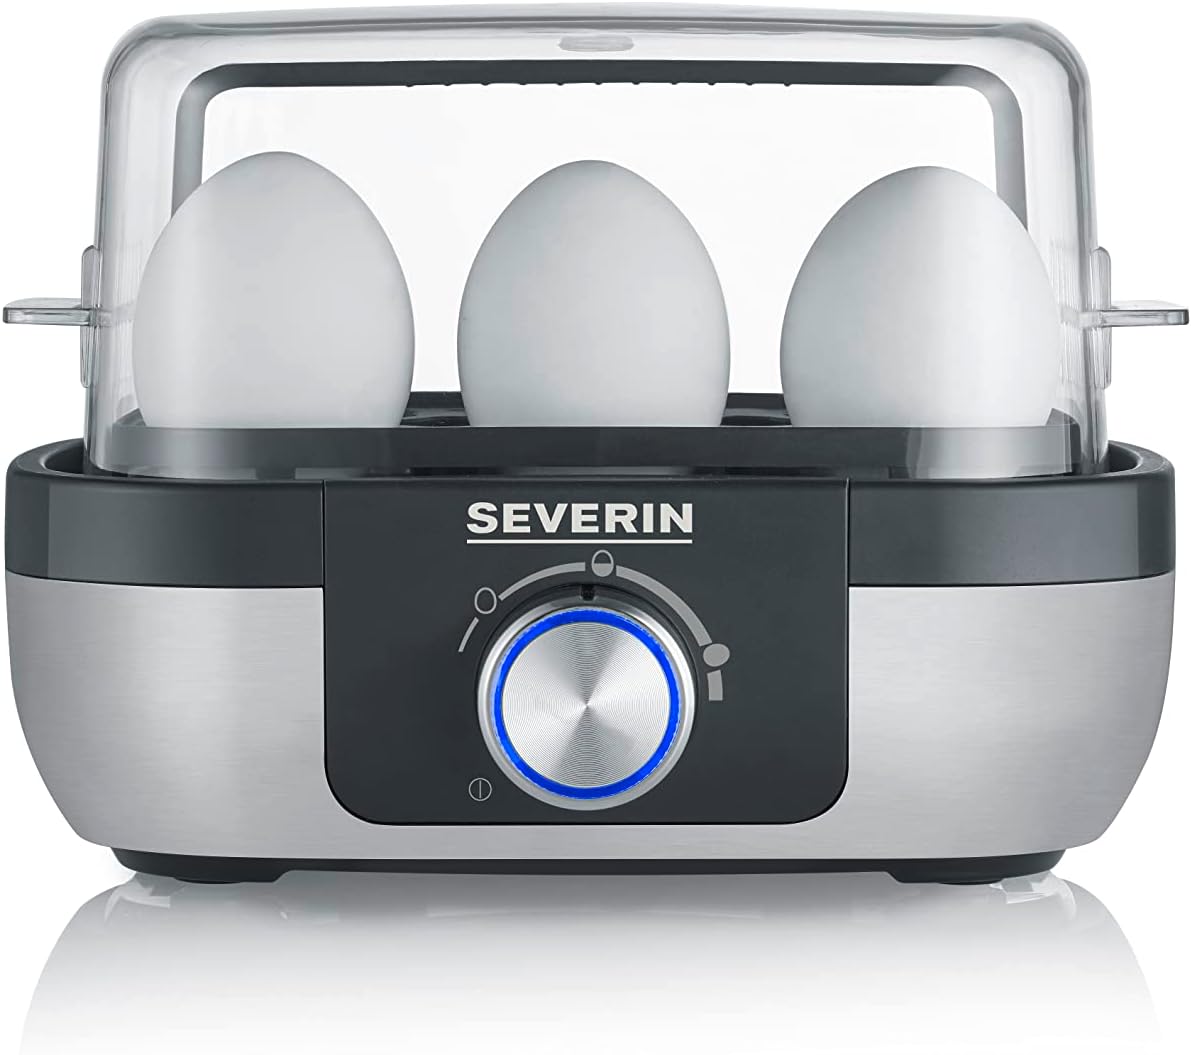 Severin EK 3169 1-6 eggs